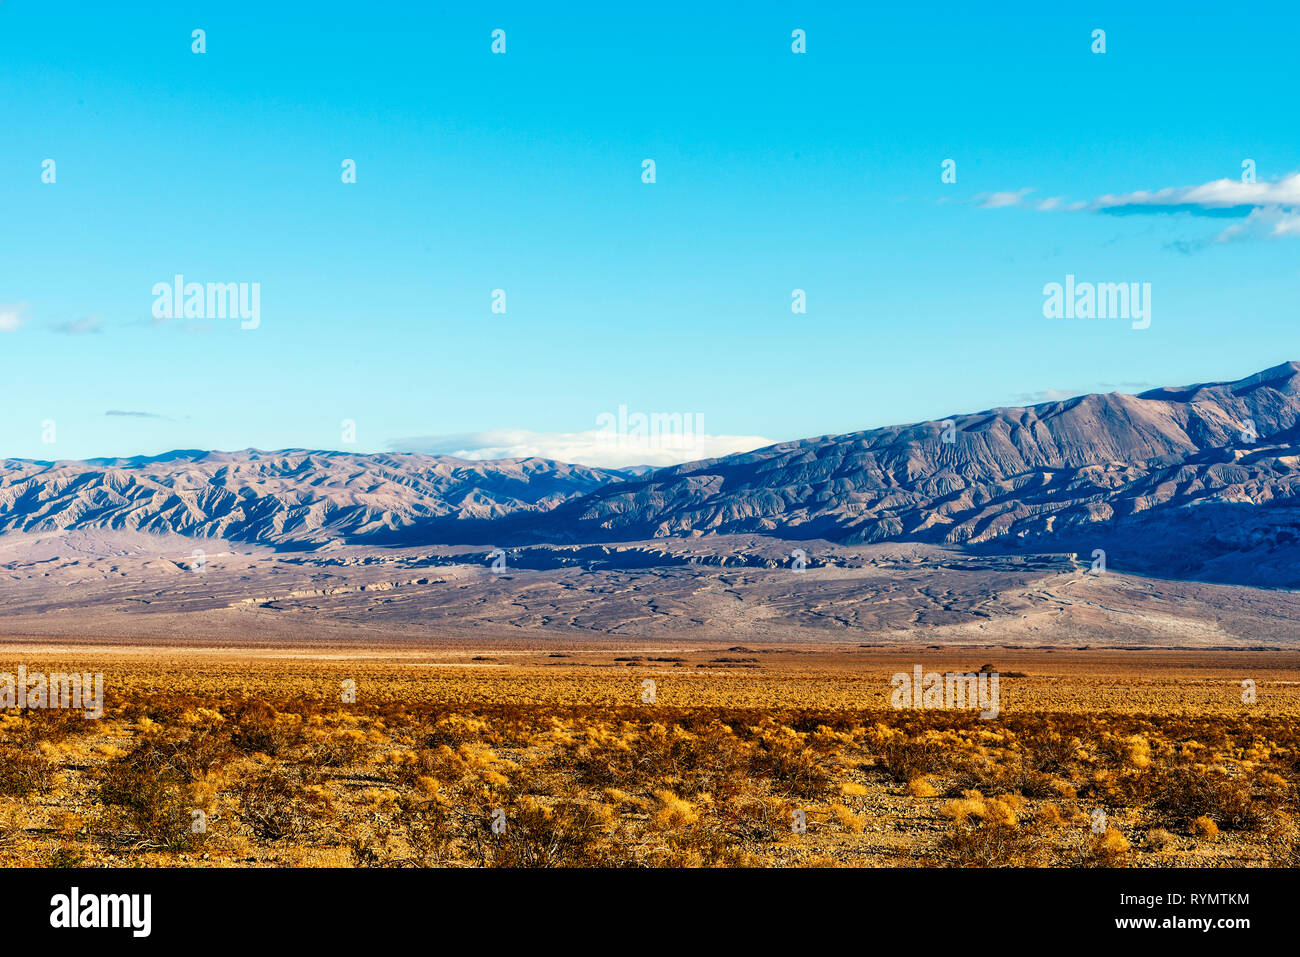 Golden desert bushes and barren mountains under a blue sky. Stock Photo